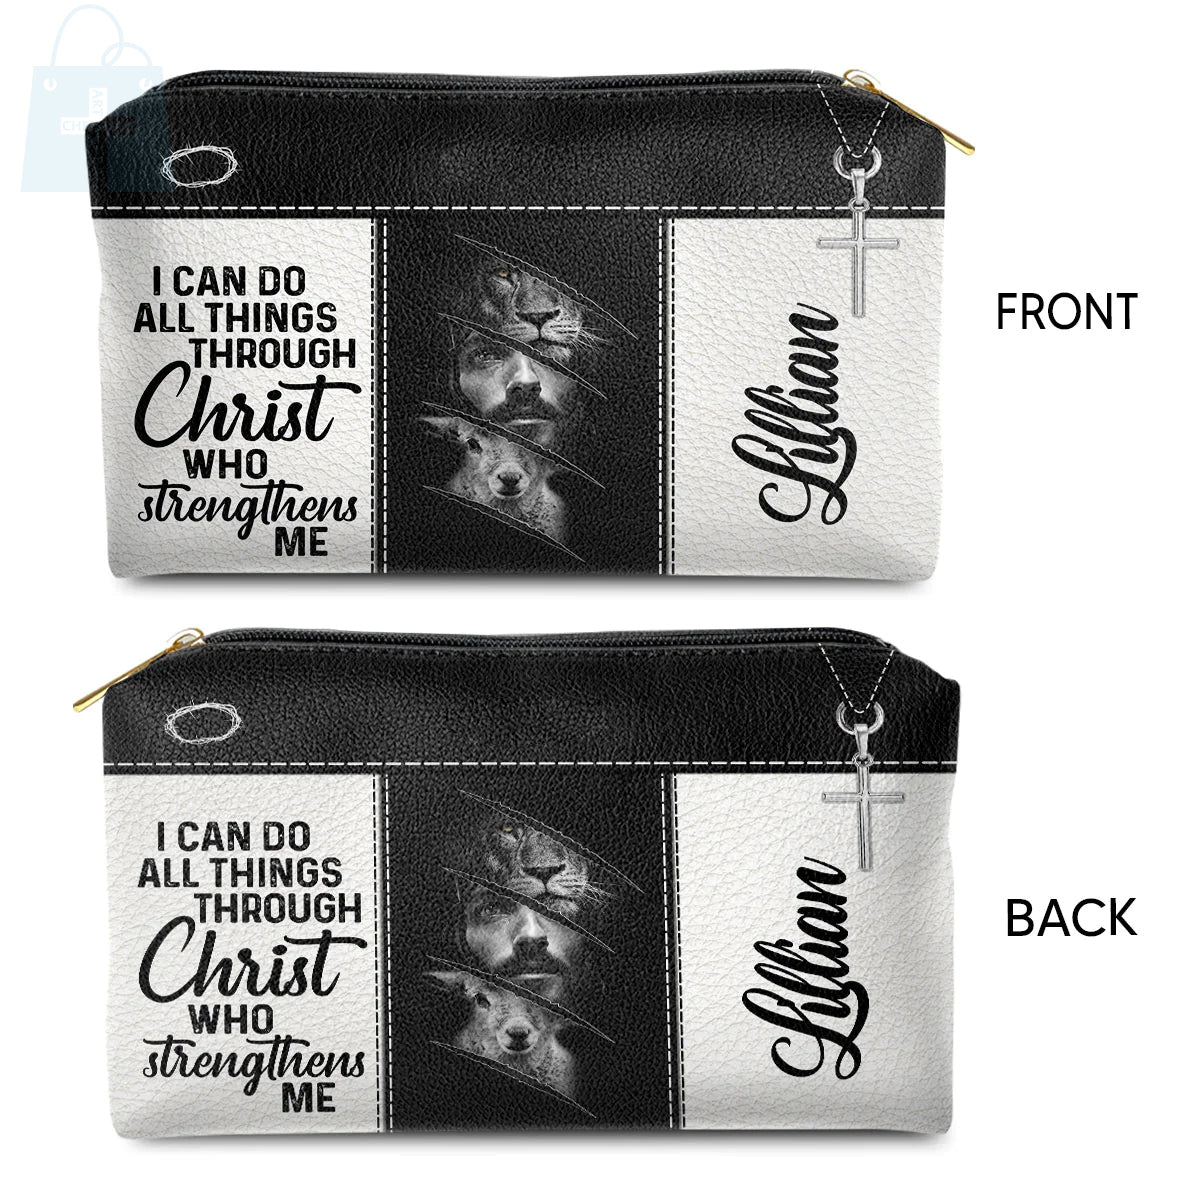 Christianartbag Makeup Cosmetic Bag, Jesus & Lion, Christmas Gift, Personalized Leather Cosmetic Bag. - Christian Art Bag